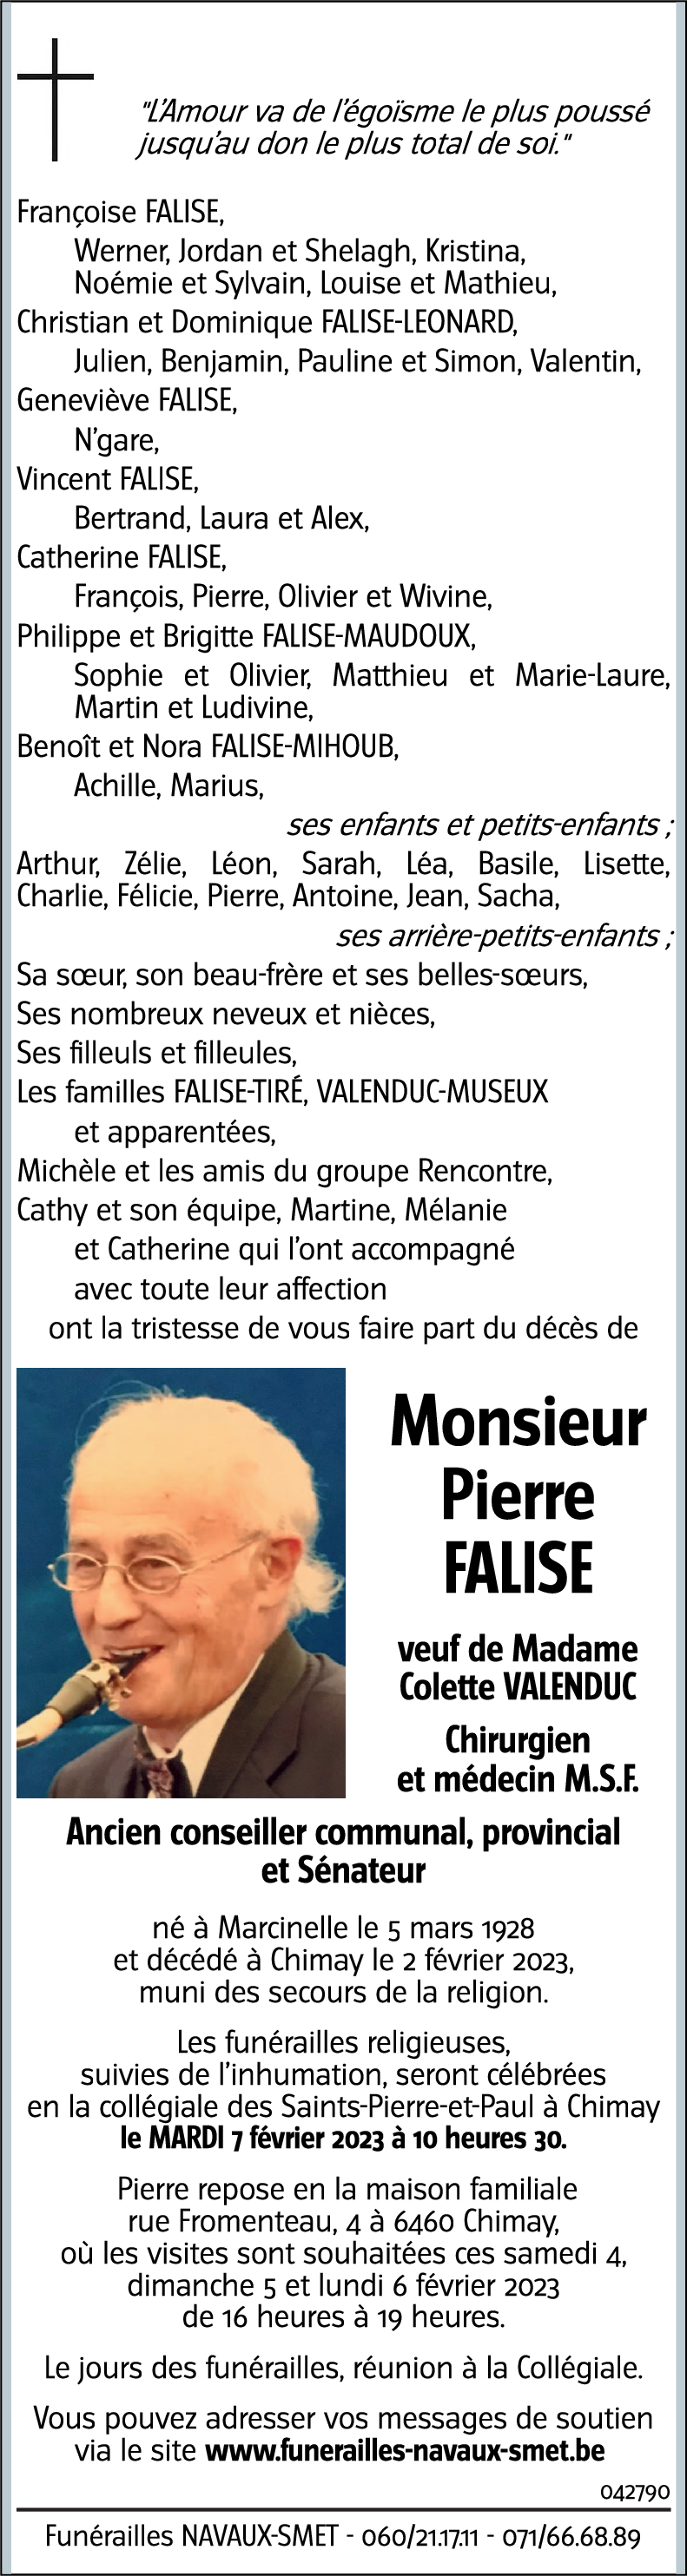 Pierre FALISE